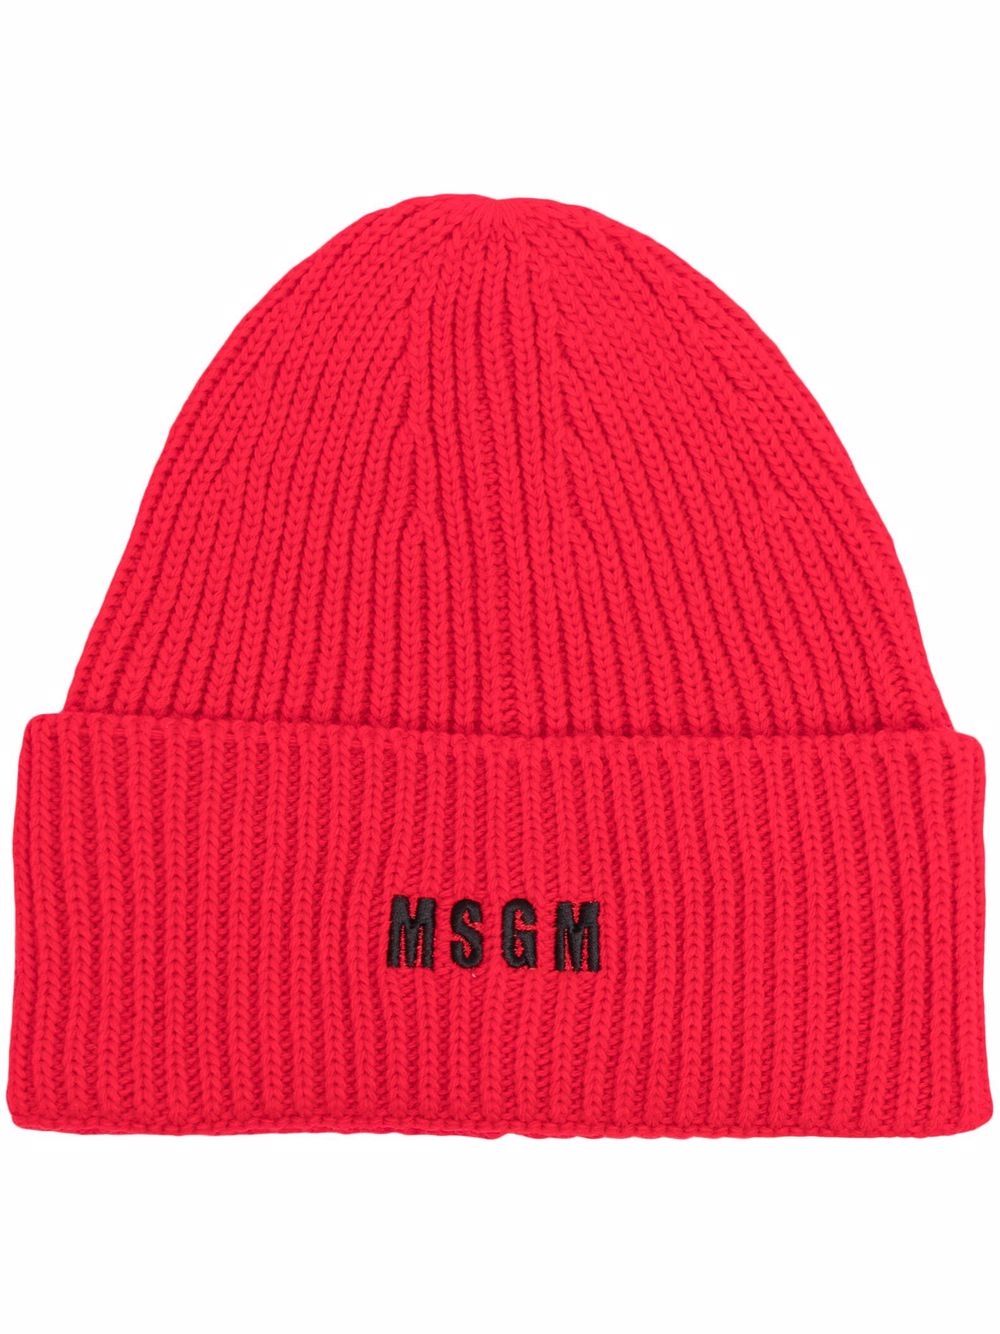 фото Msgm шапка бини с вышитым логотипом